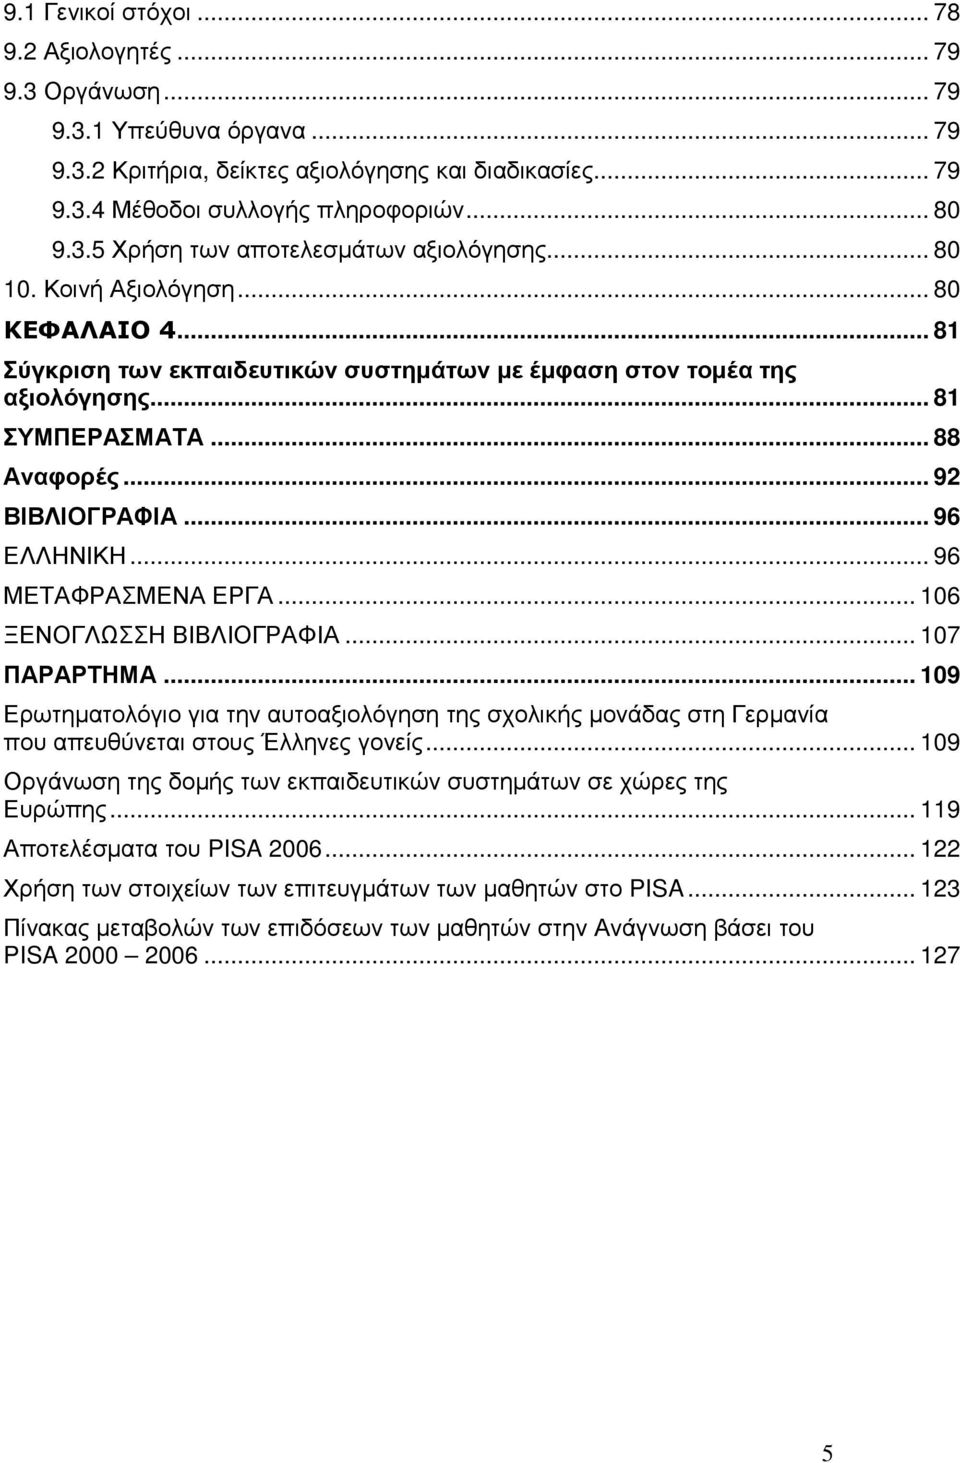 .. 96 ΜΕΤΑΦΡΑΣΜΕΝΑ ΕΡΓΑ... 106 ΞΕΝΟΓΛΩΣΣΗ ΒΙΒΛΙΟΓΡΑΦΙΑ... 107 ΠΑΡΑΡΤΗΜΑ... 109 Ερωτηµατολόγιο για την αυτοαξιολόγηση της σχολικής µονάδας στη Γερµανία που απευθύνεται στους Έλληνες γονείς.